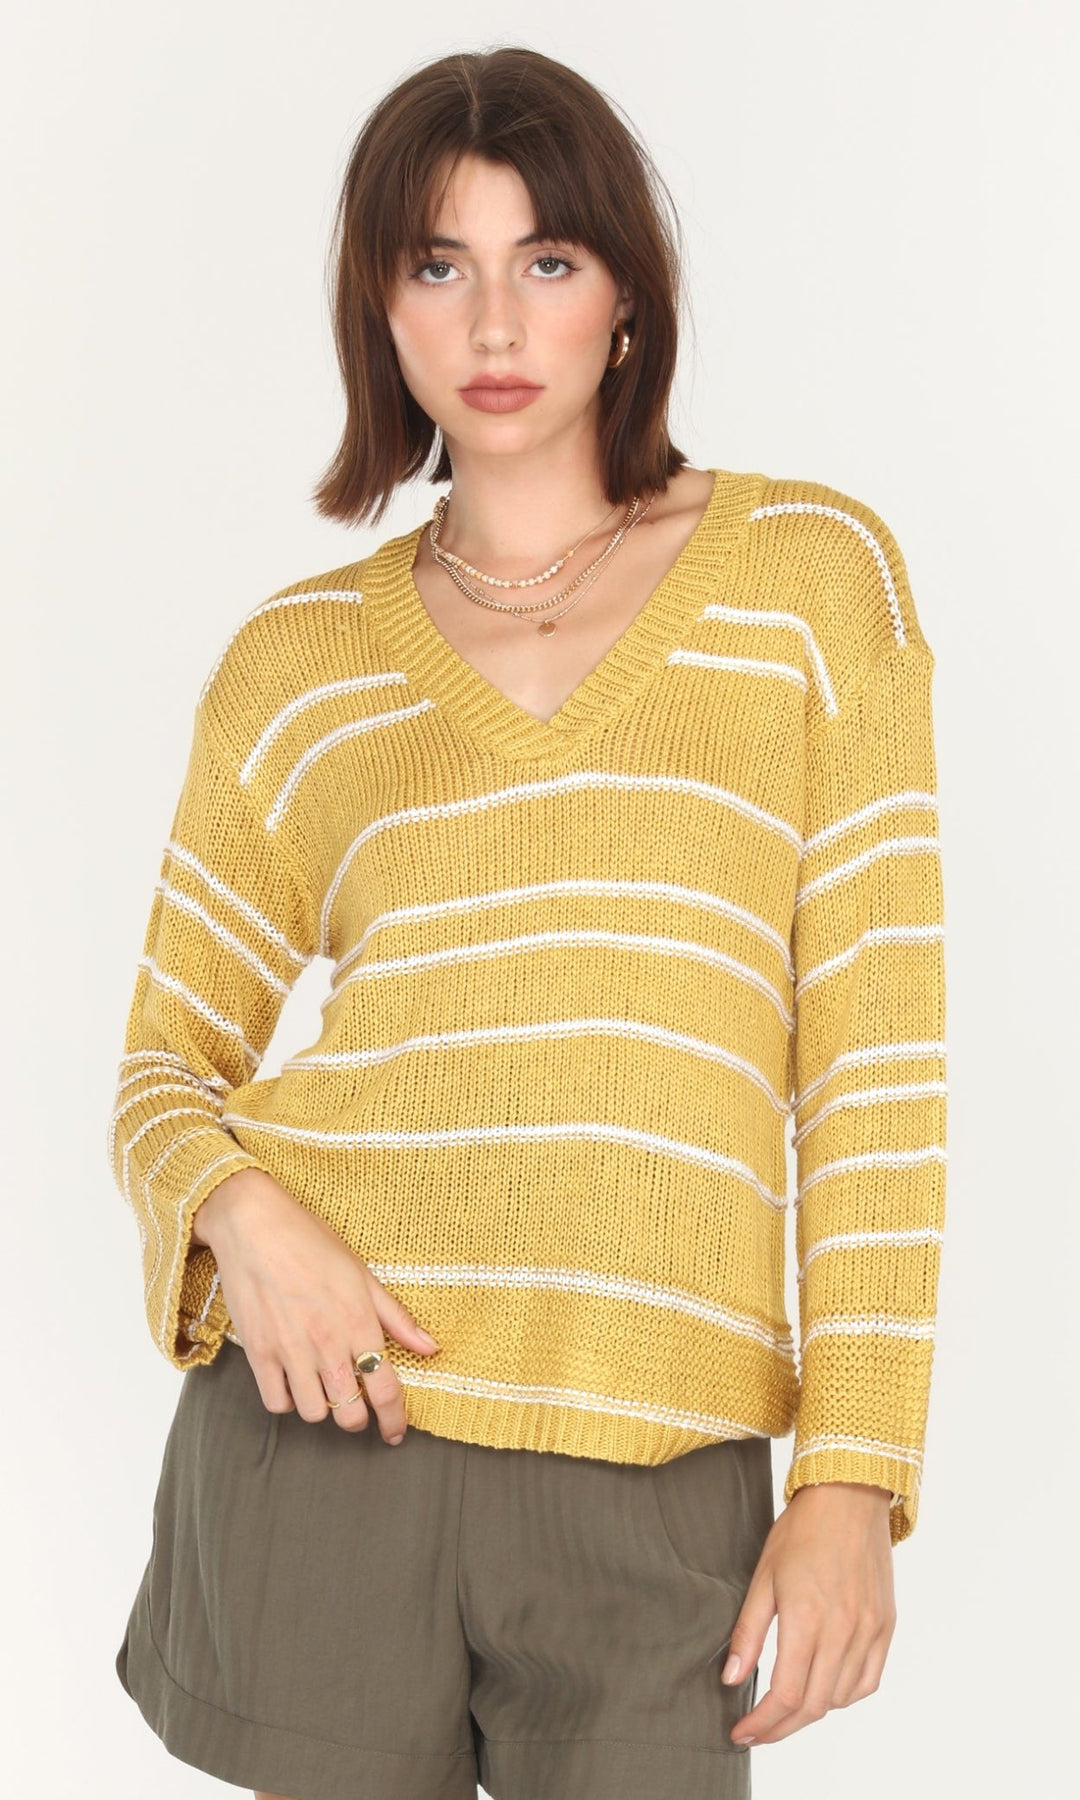 Greylin - Larissa Lightweight Stripe Sweater: Golden Mustard - Shorely Chic Boutique